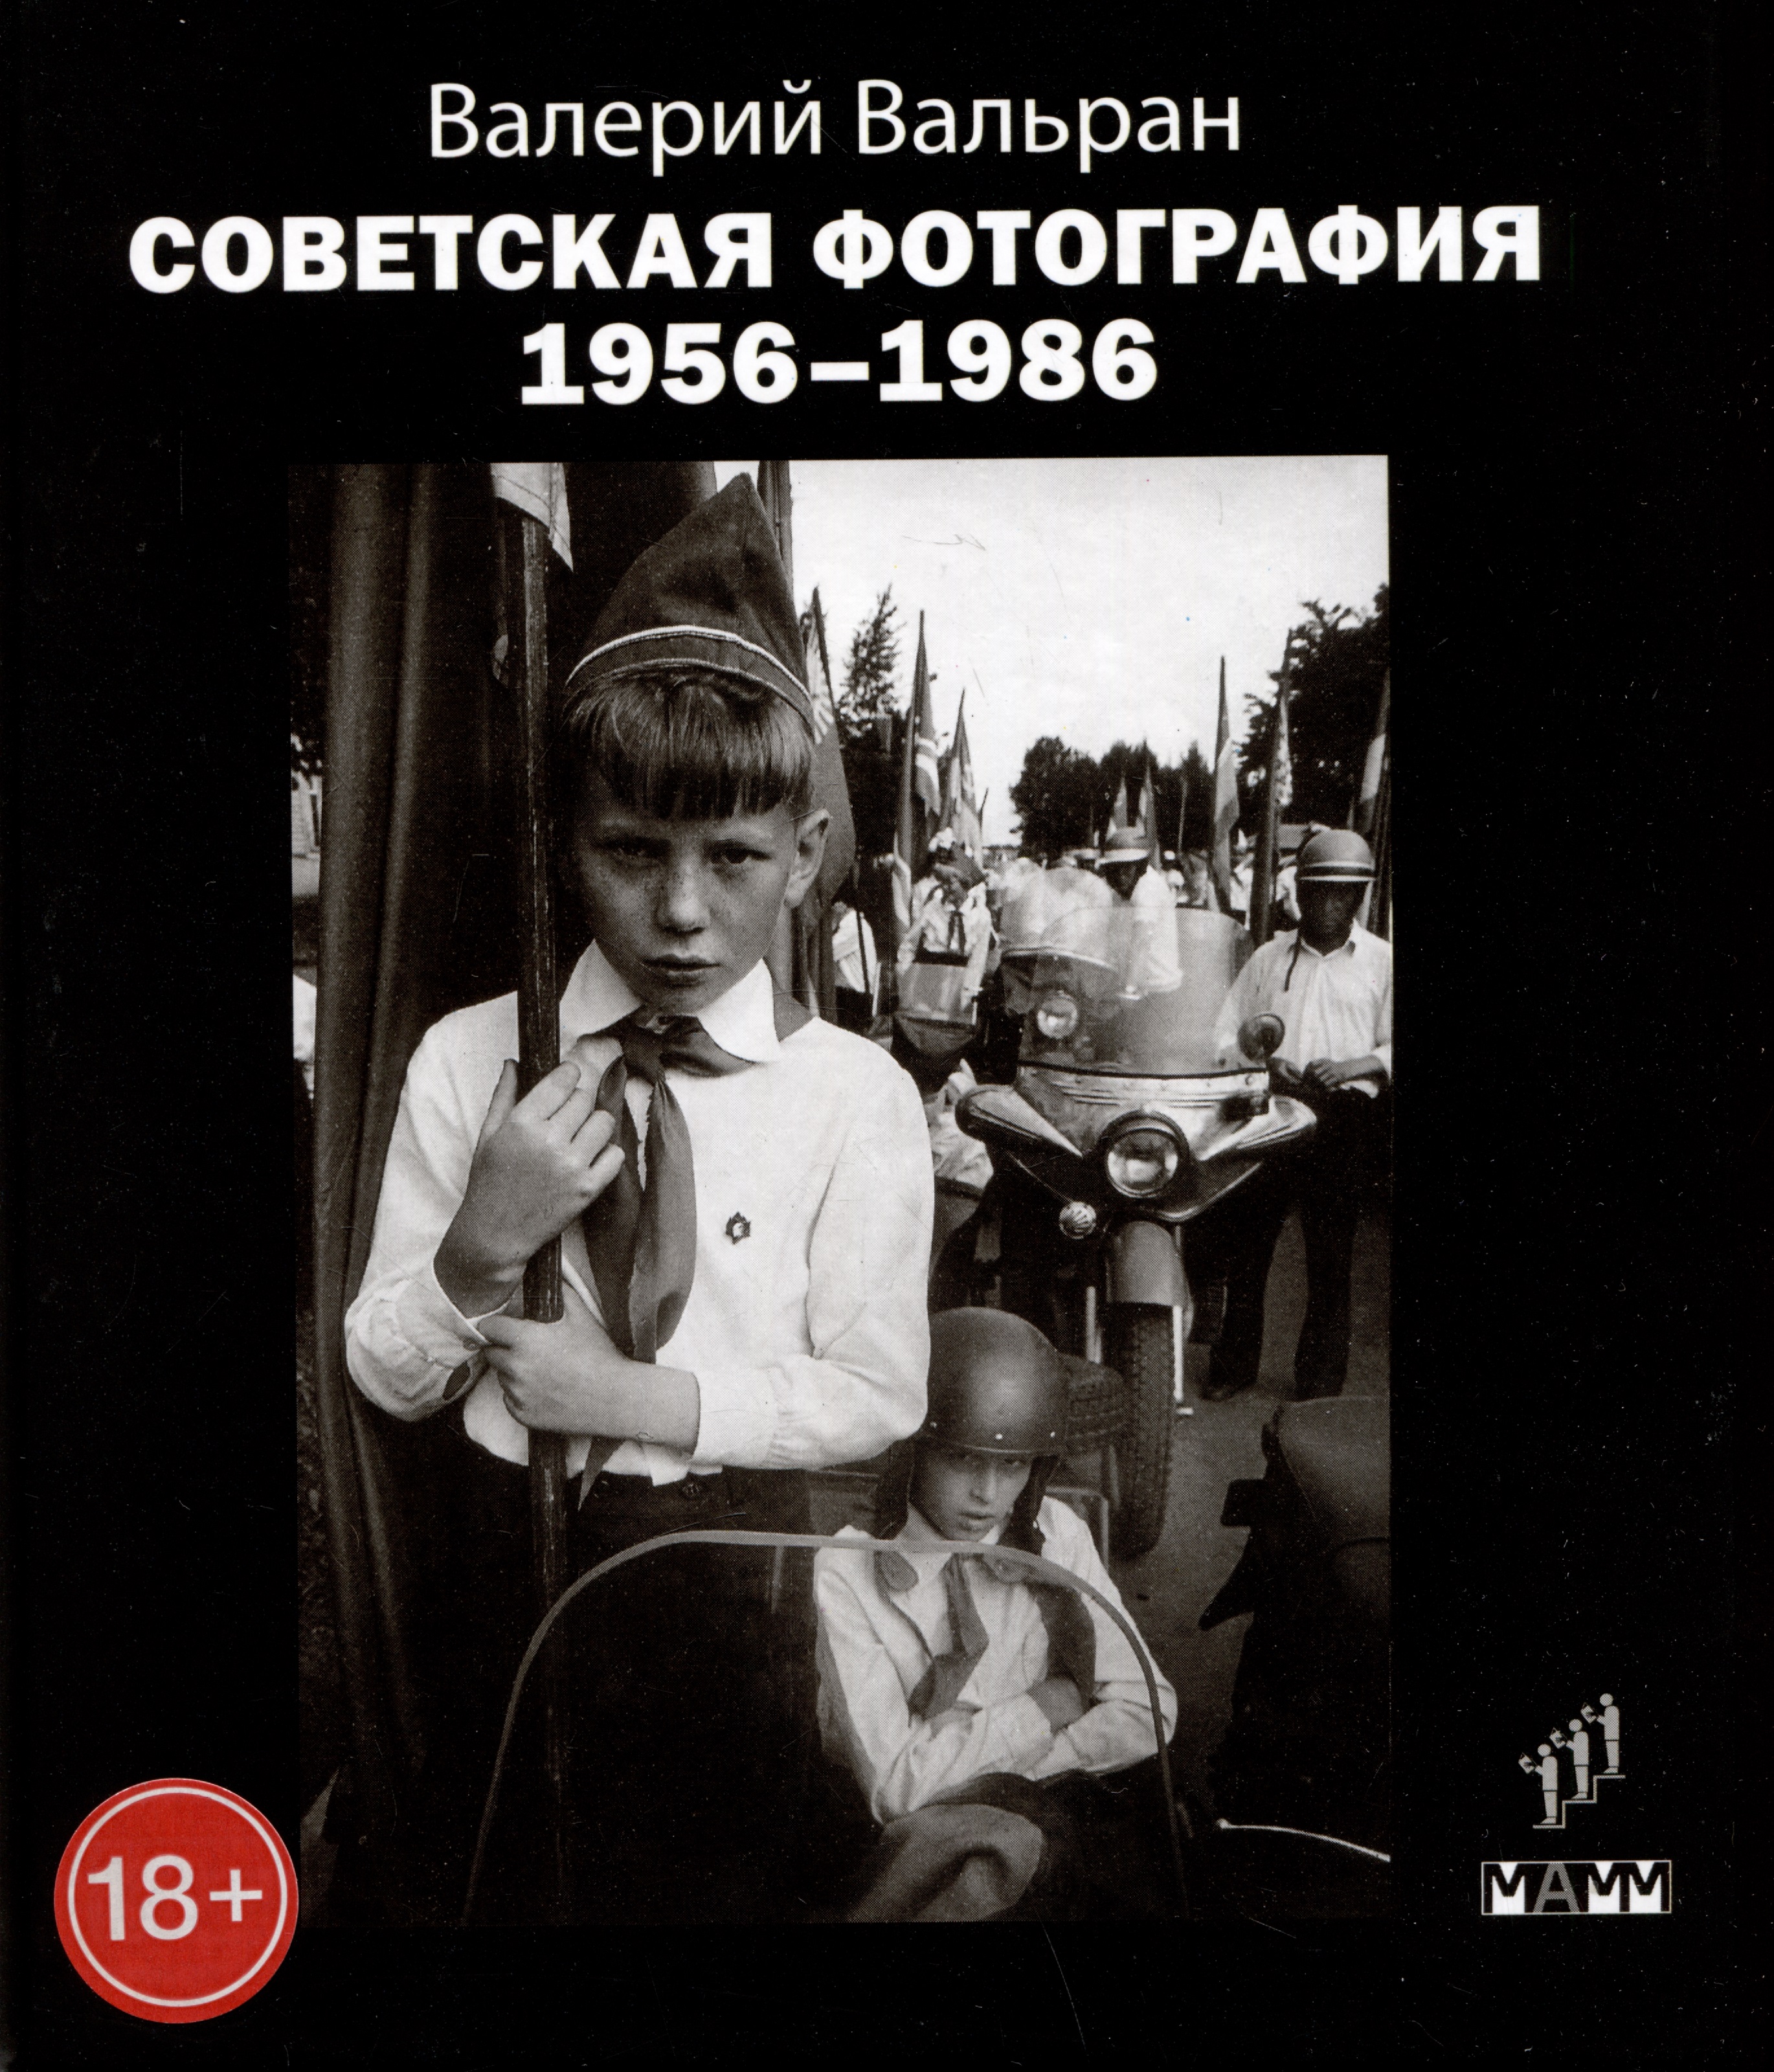 Вальран Валерий Советская фотография. 1956-1986